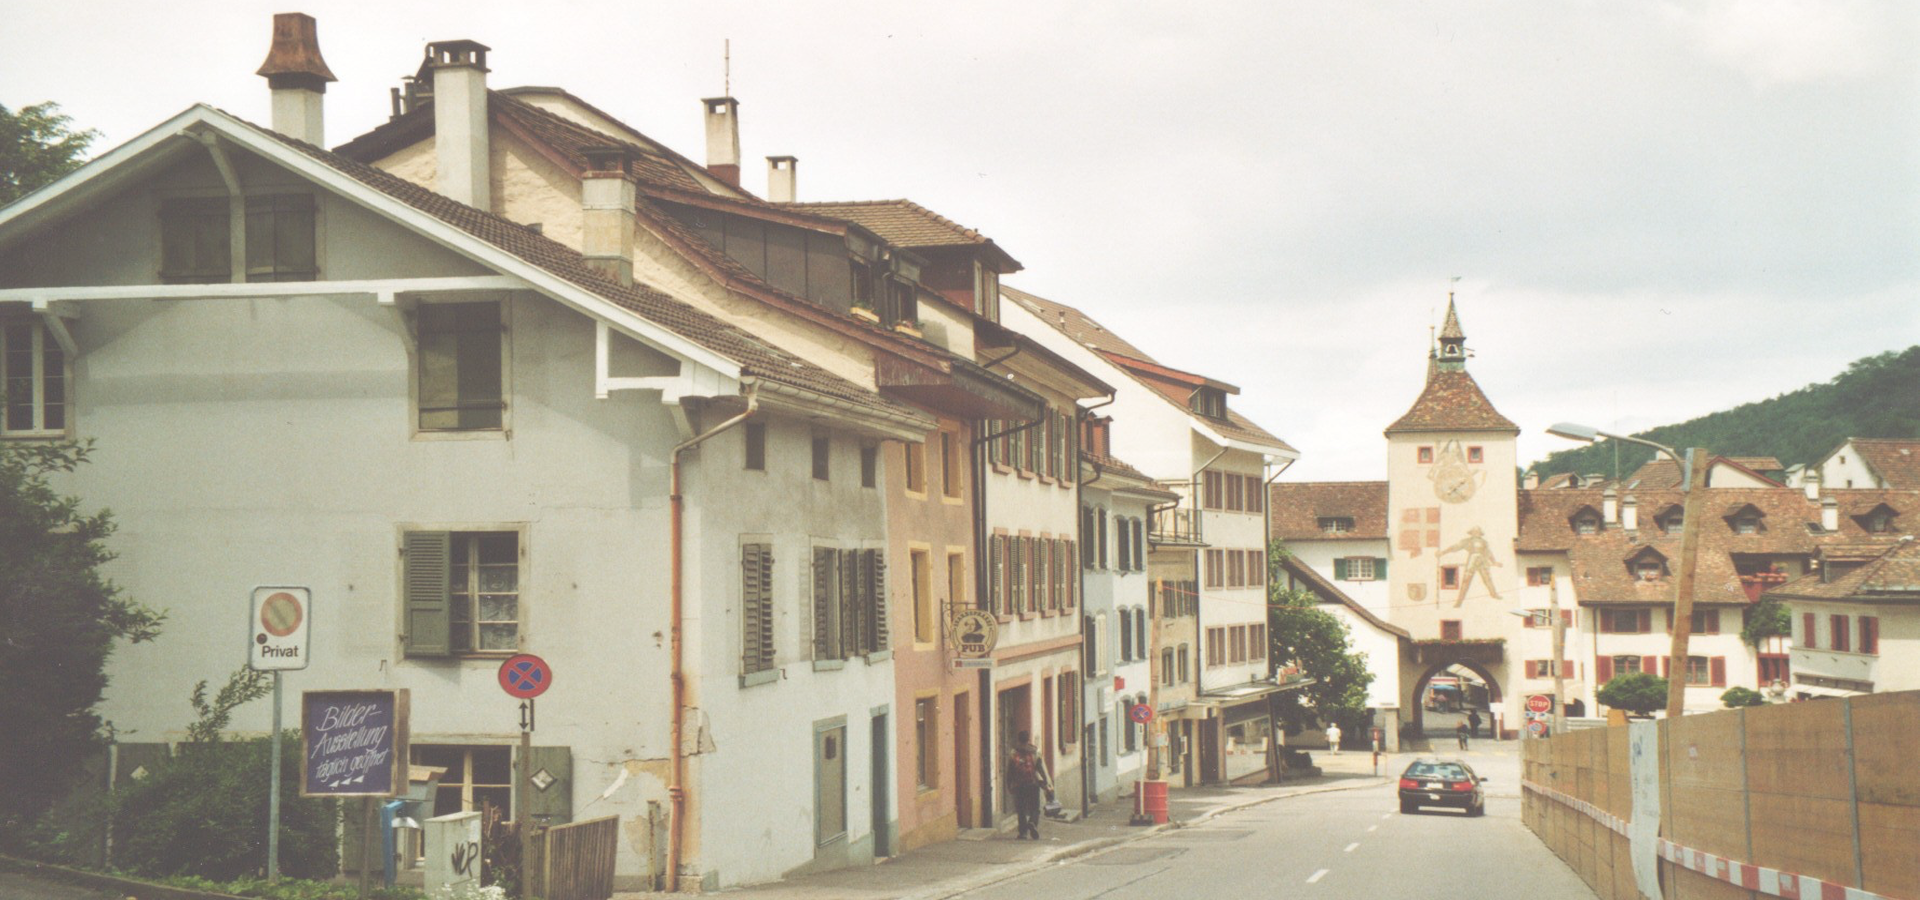 <b>Liestal, Canton of Basel-Landschaft, Switzerland</b>